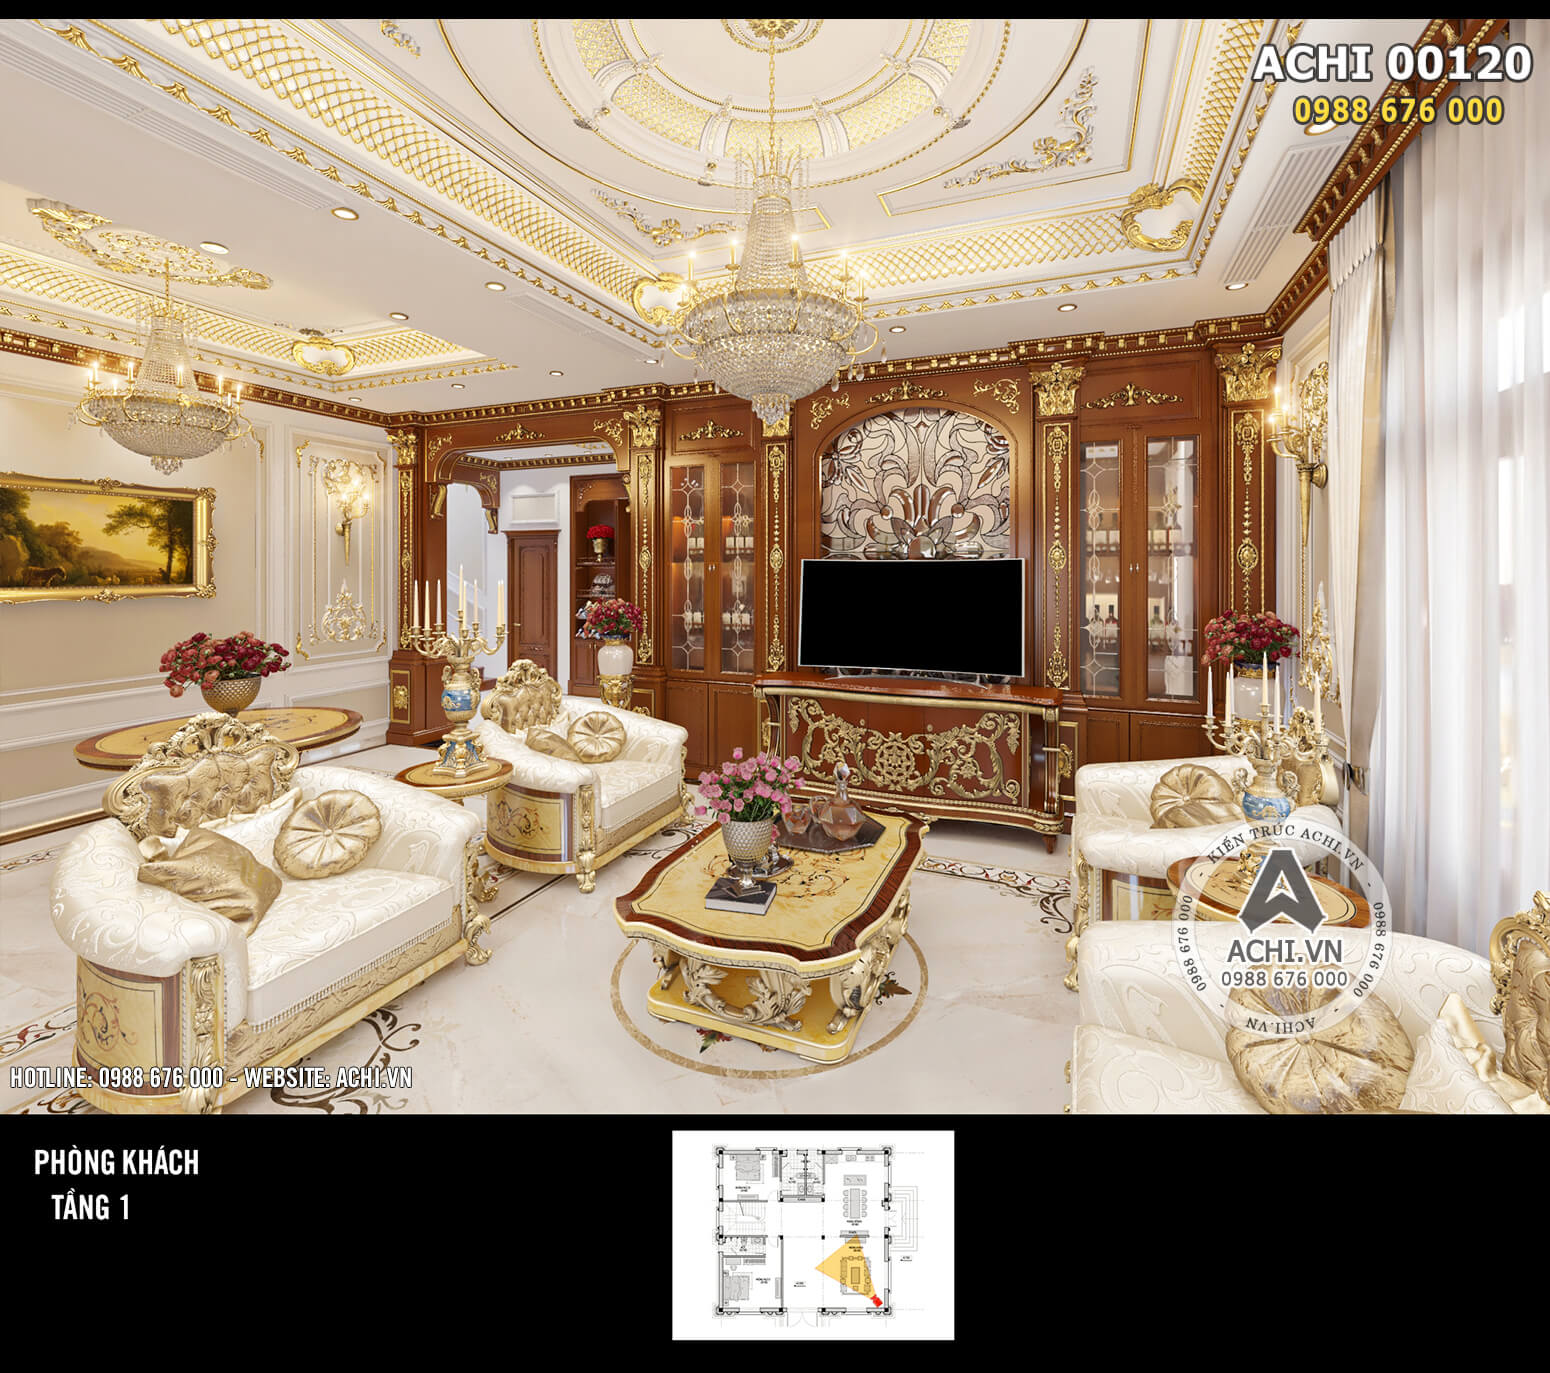 Mẫu thiết kế nội thất tân cổ đẹp nổi bật với không gian phòng khách - Mã số: ACHI 00120